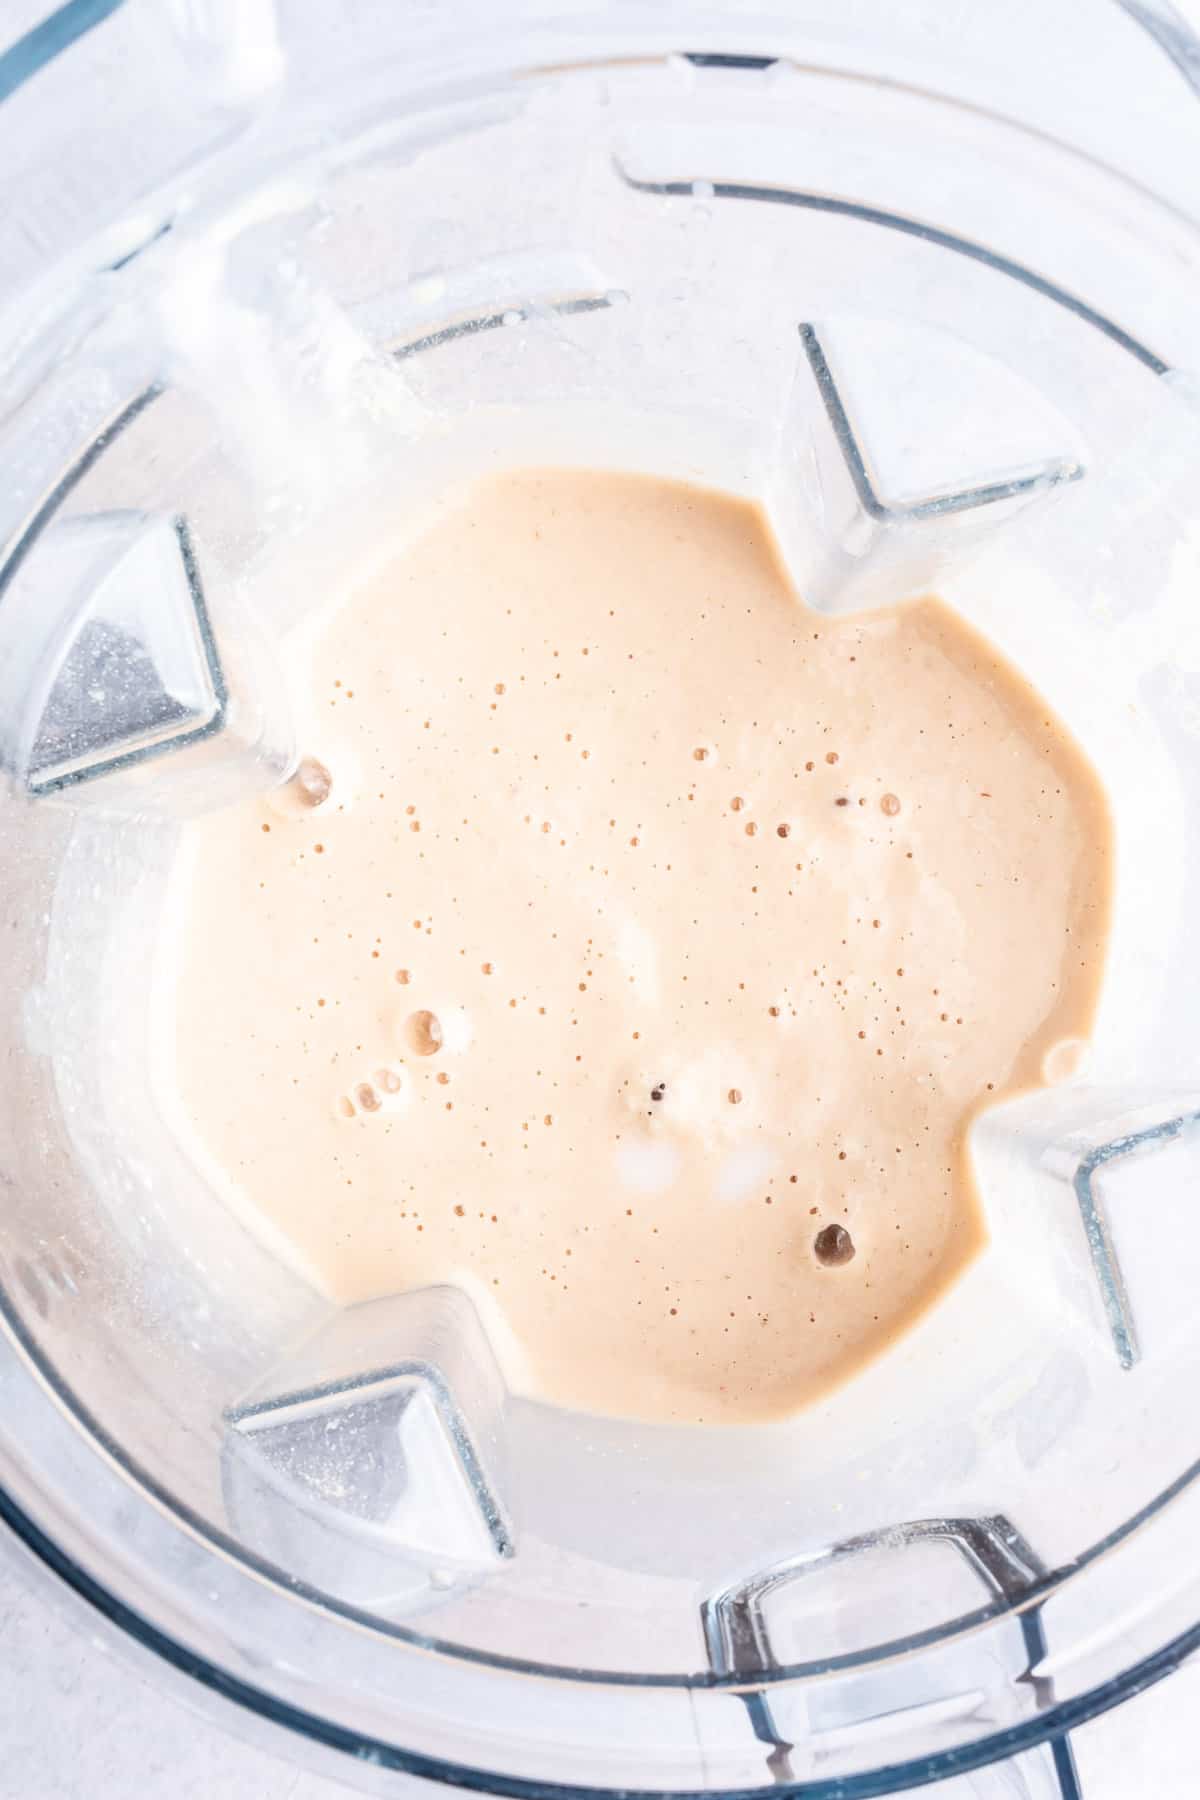 Blended smoothie in a blender.